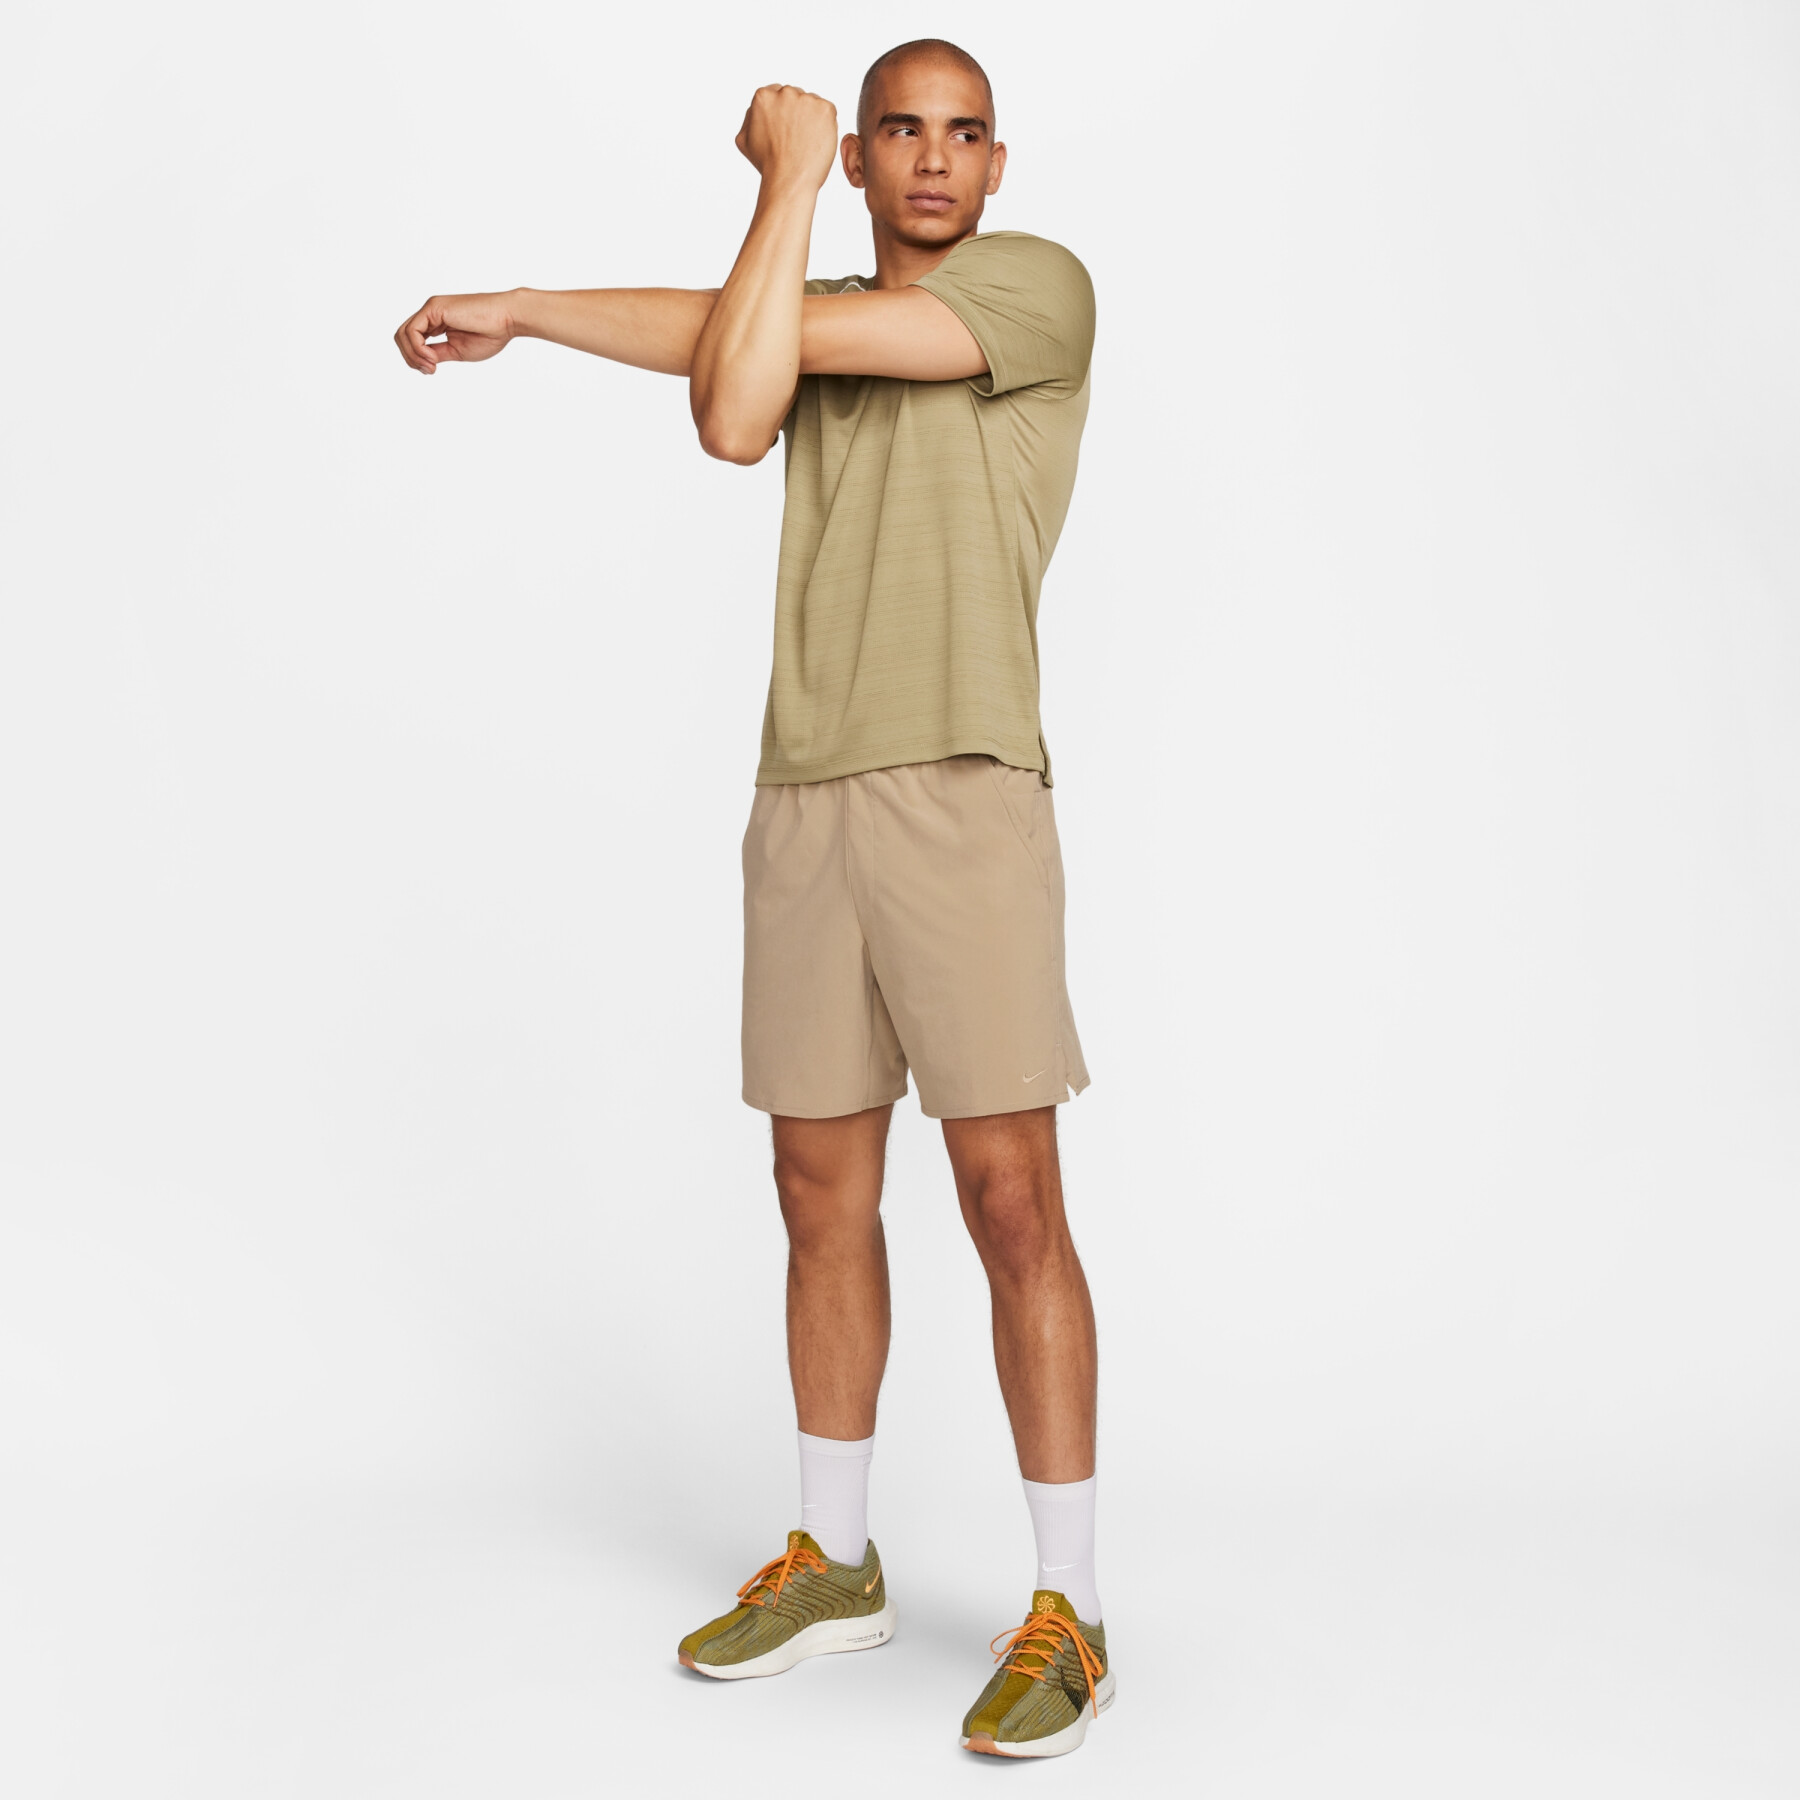 Pantaloncini sfoderati Nike Dri-FIT Unlimited Woven UL 7"